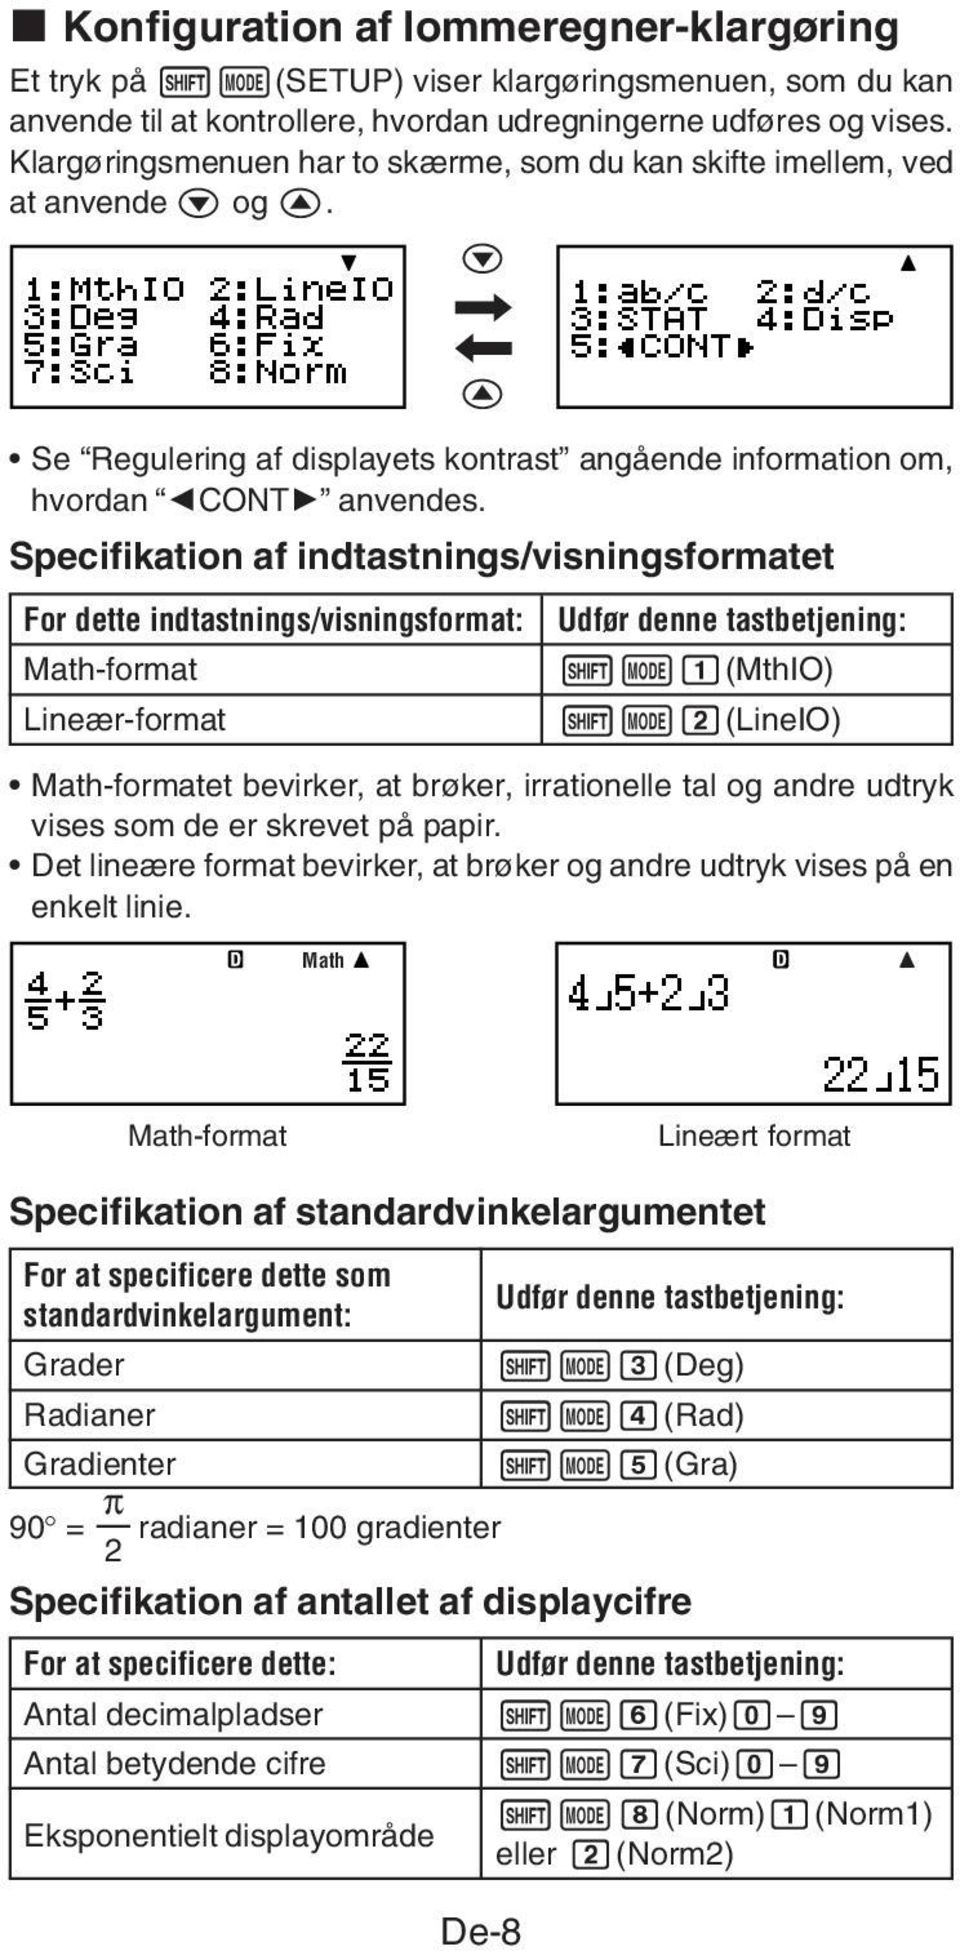 Specifikation af indtastnings/visningsformatet For dette indtastnings/visningsformat: Math-format Udfør denne tastbetjening: 1N1(MthIO) Lineær-format 1N2(LineIO) Math-formatet bevirker, at brøker,